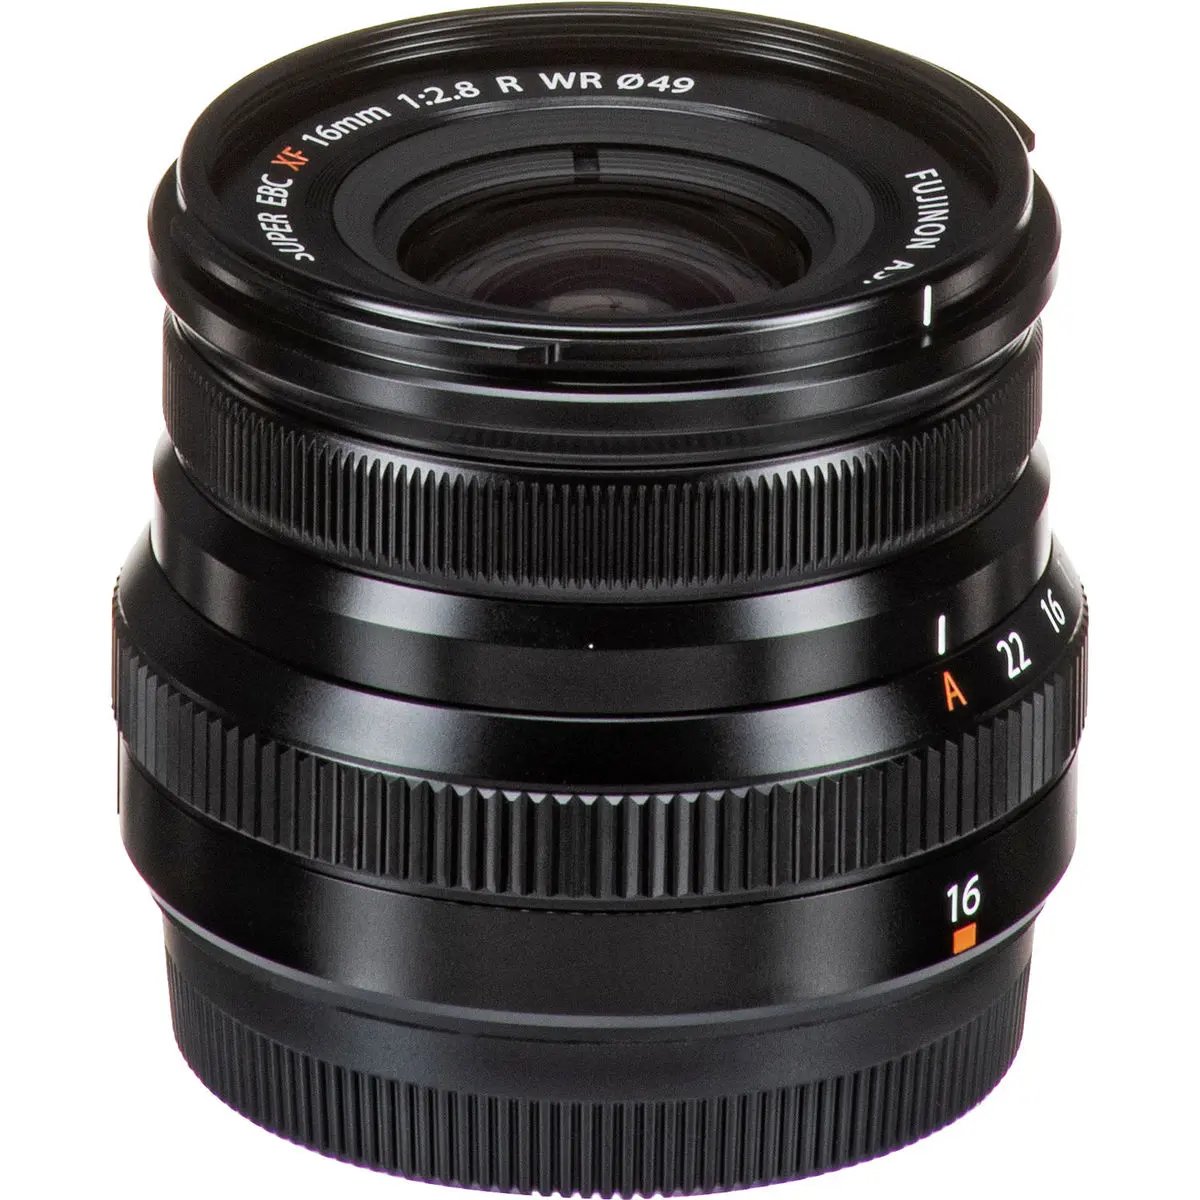 5. FUJINON XF 16mm F2.8 R WR Black Lens